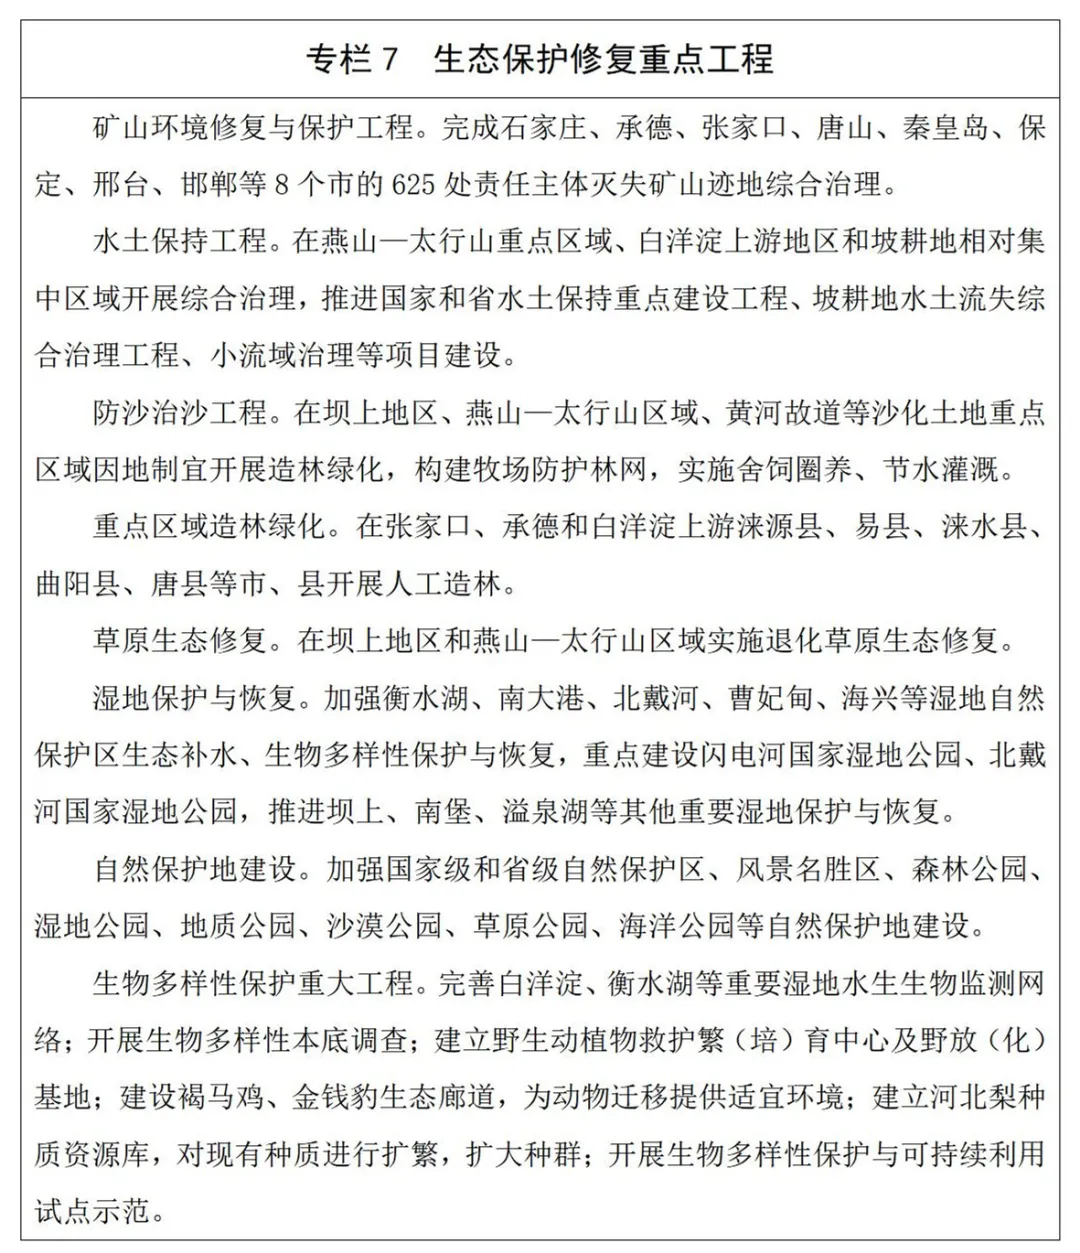 河北省生態環境保護“十四五”規劃